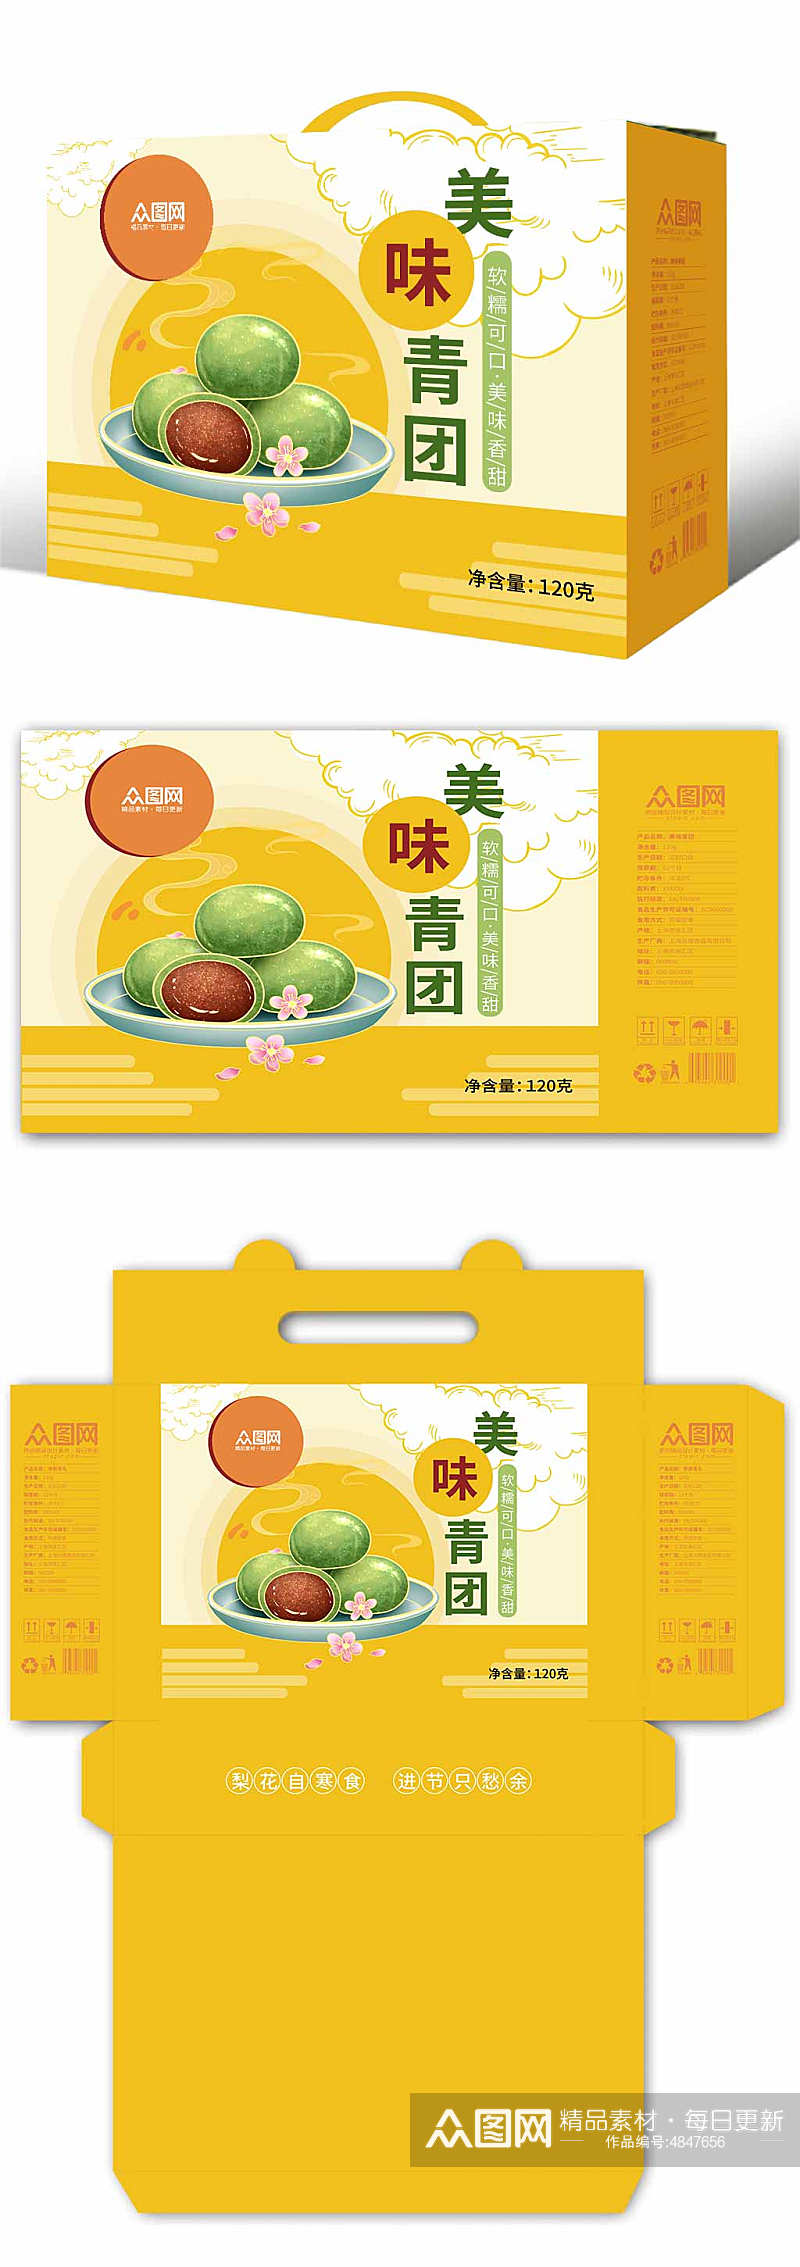 简约黄色青团艾叶粑美食包装礼盒设计素材